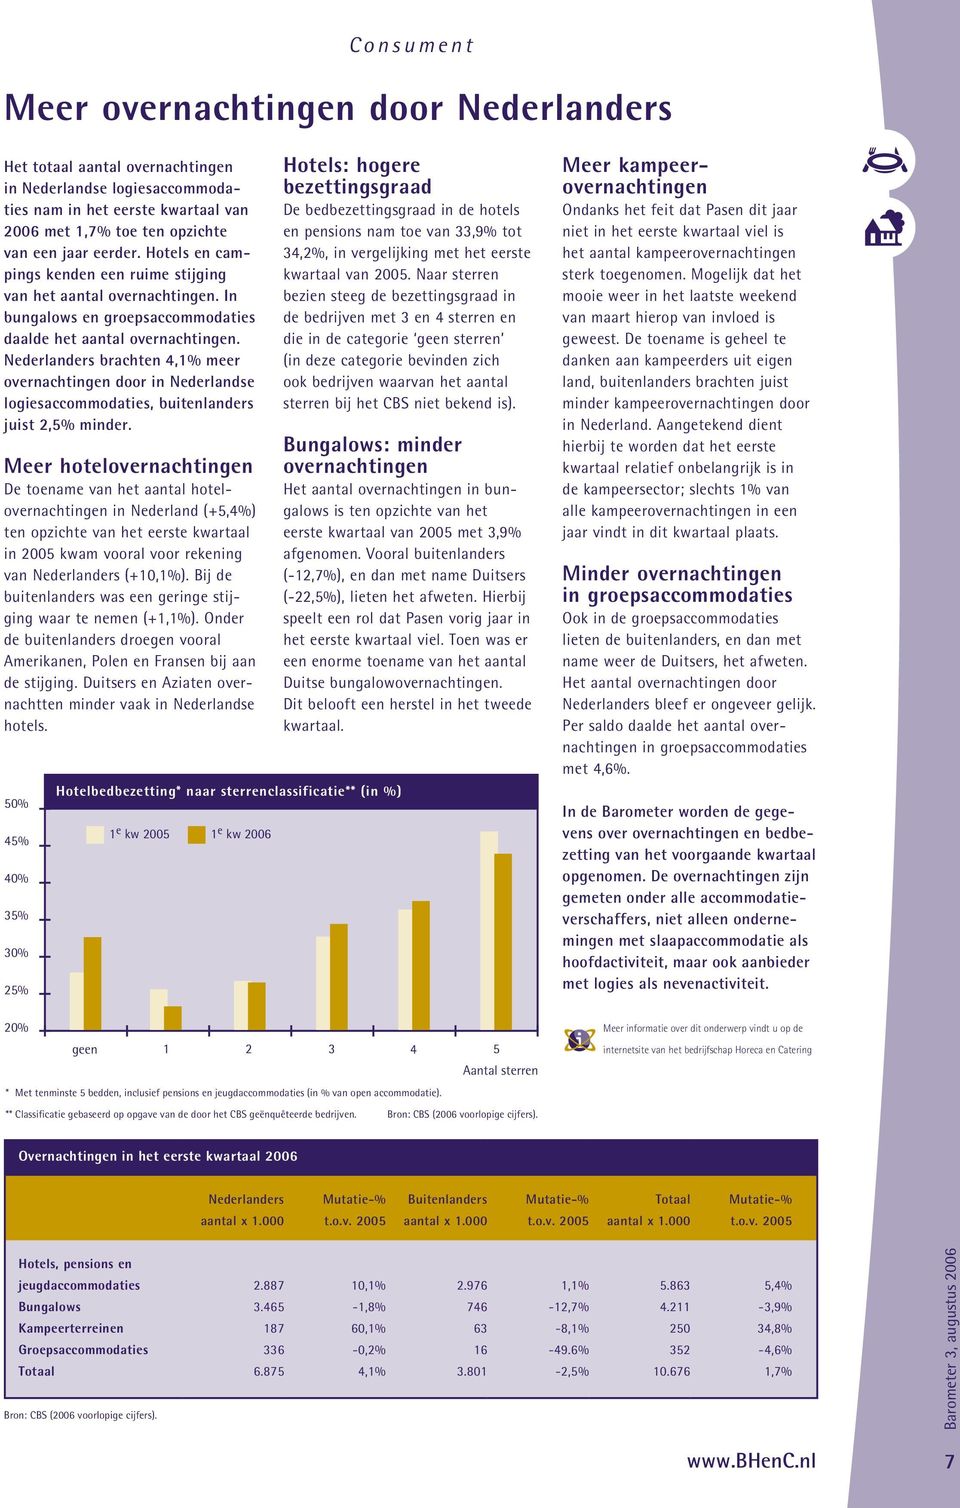 Nederlanders brachten 4,1% meer overnachtingen door in Nederlandse logiesaccommodaties, buitenlanders juist 2,5% minder.